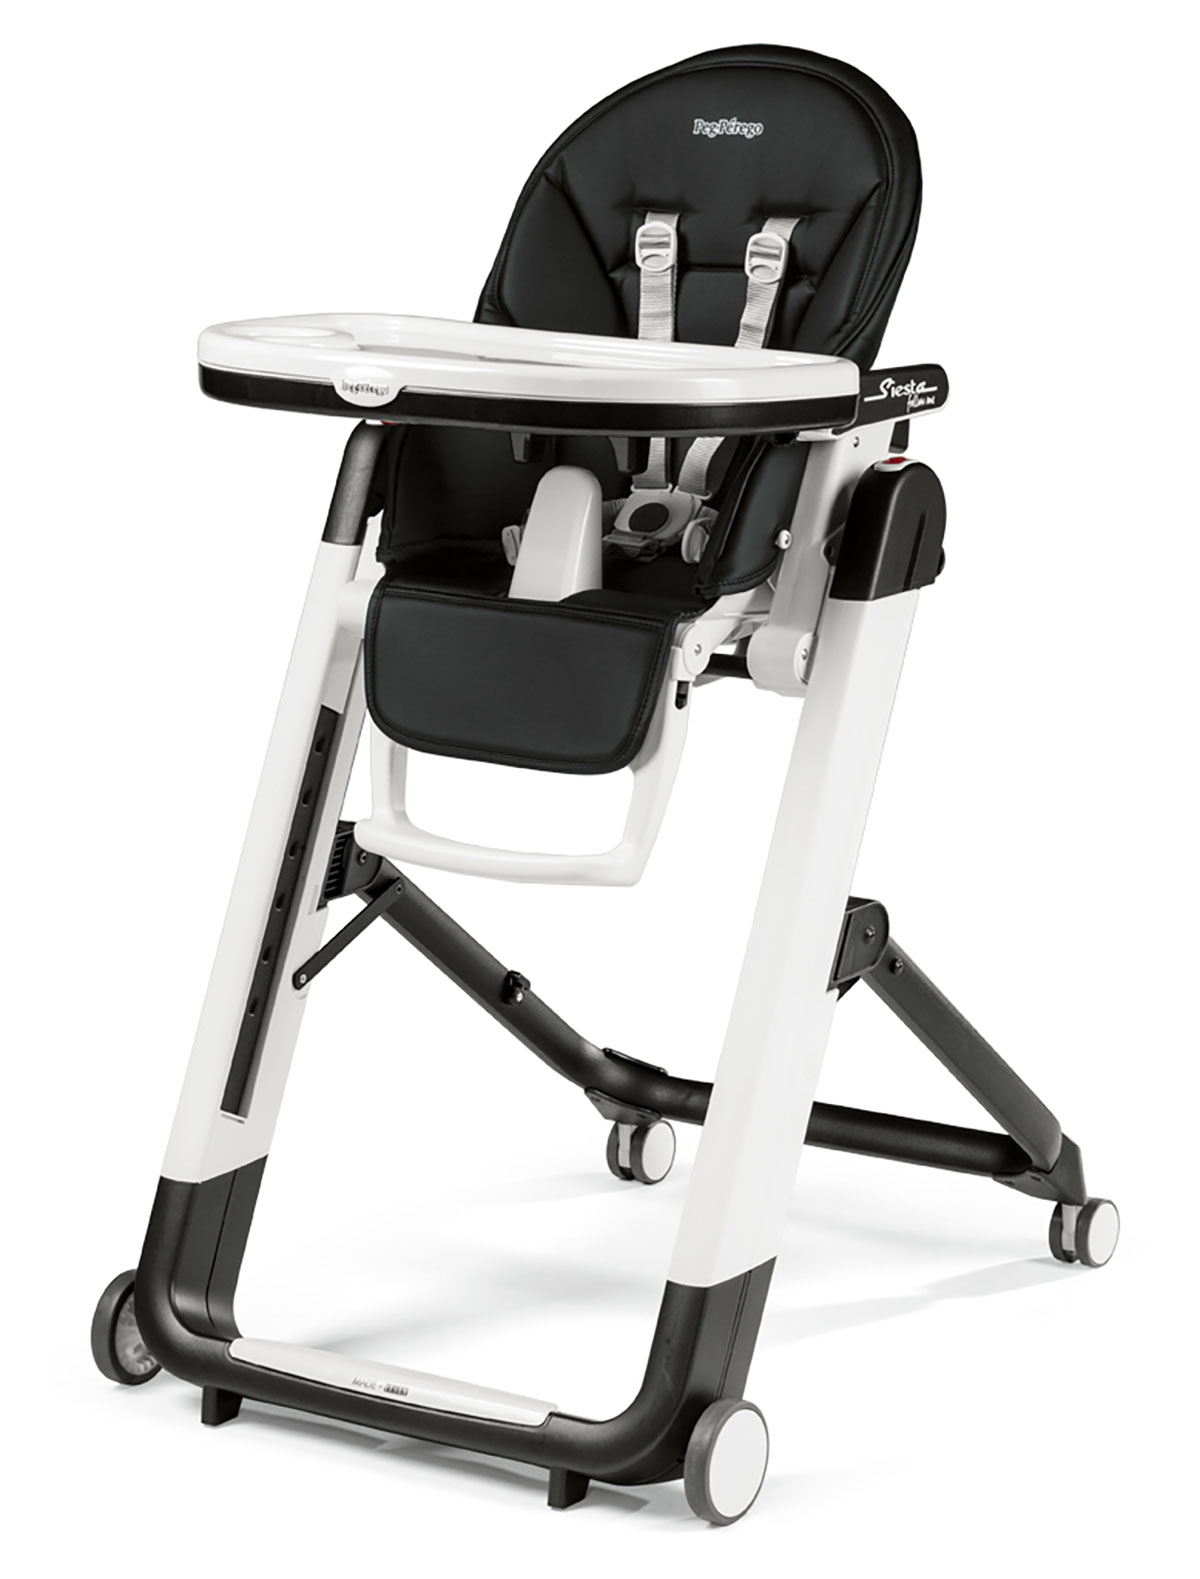 Peg perego стульчик для новорожденных